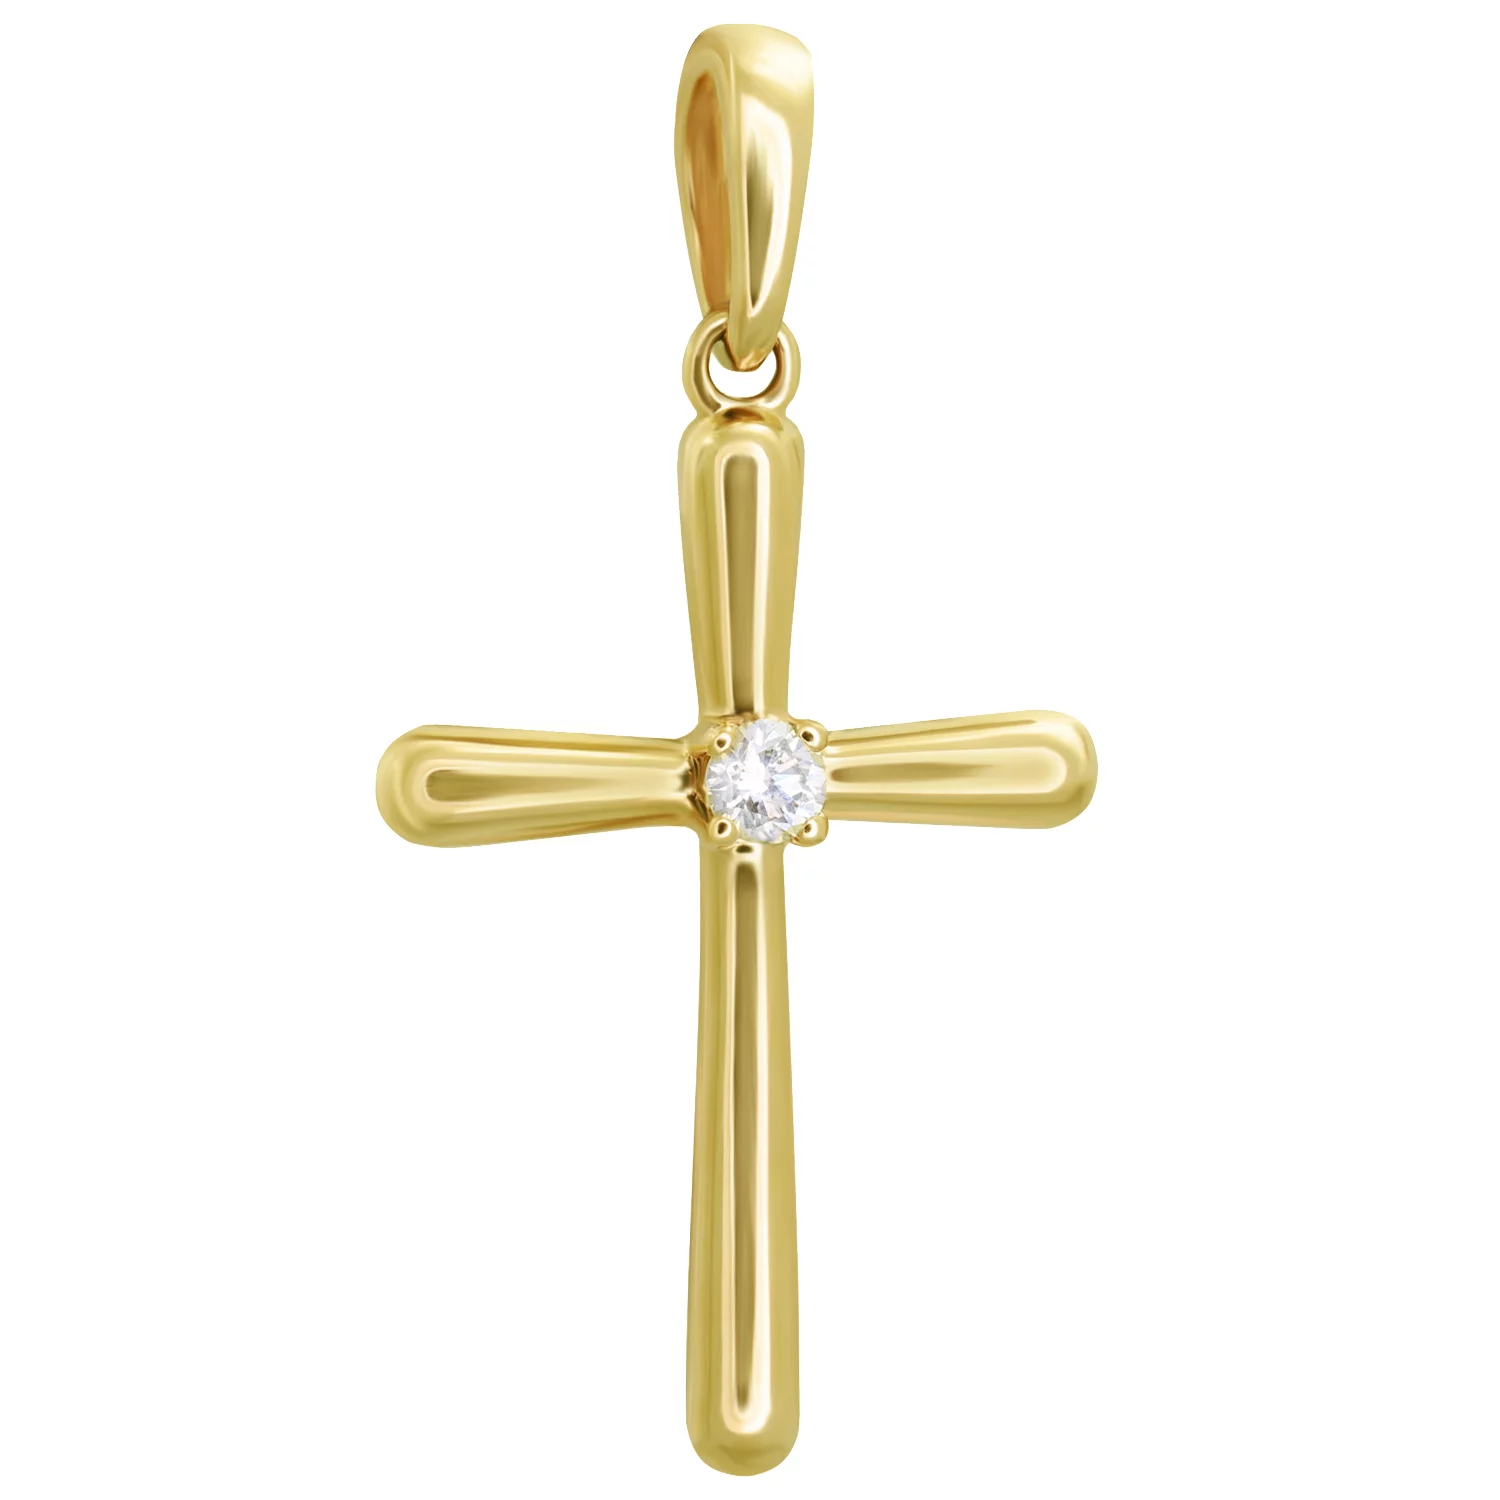 Крестик из лимонного золота с бриллиантом. Артикул 1721-1: цена, отзывы, фото – купить в интернет-магазине AURUM